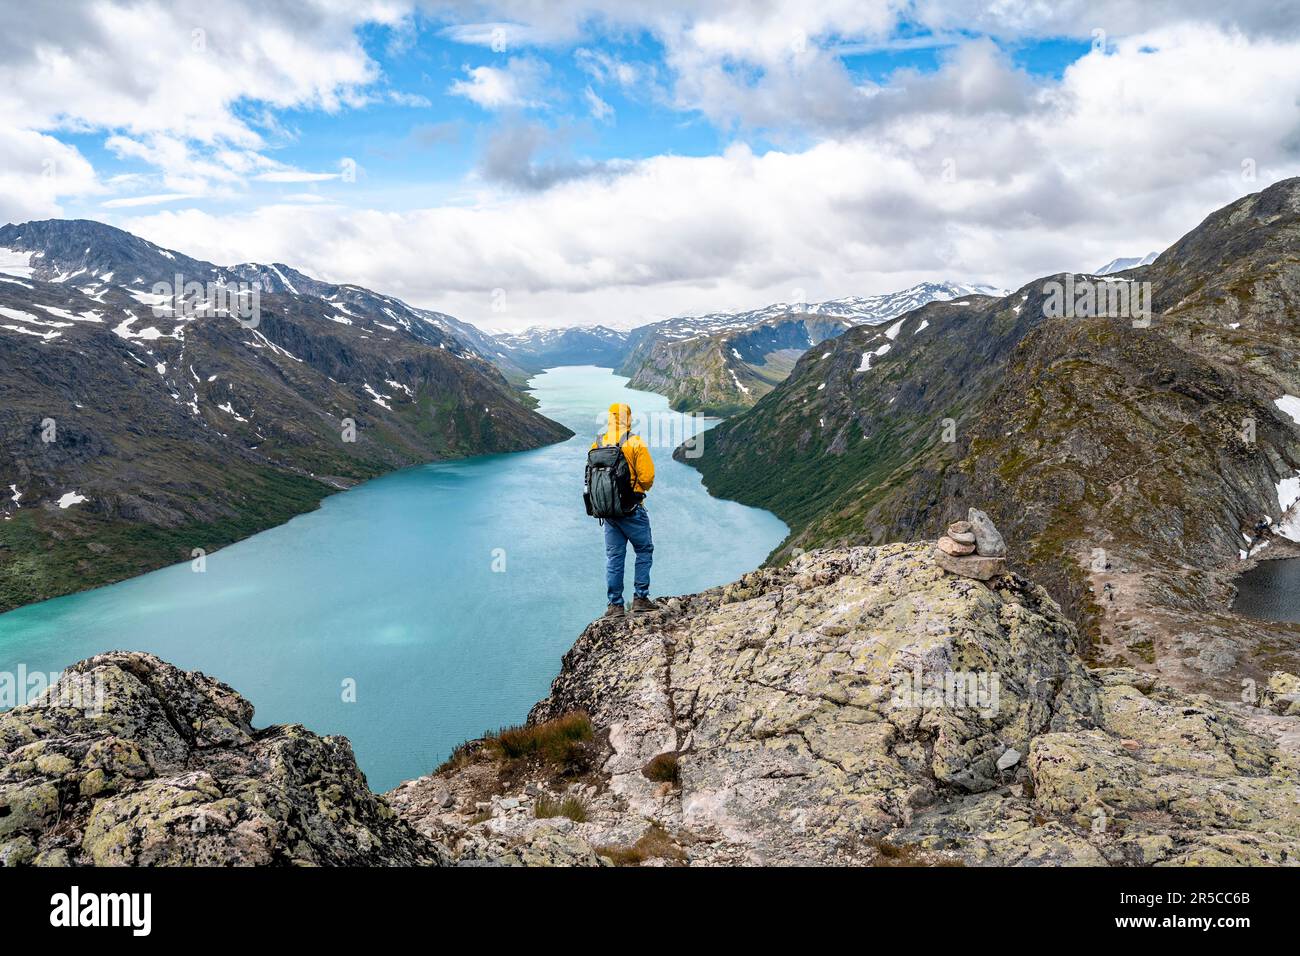 Vista sul lago Gjende e le montagne, alpinisti su Besseggen escursione, passeggiata cresta, Jotunheimen Parco Nazionale, Vaga, Innlandet, Norvegia Foto Stock